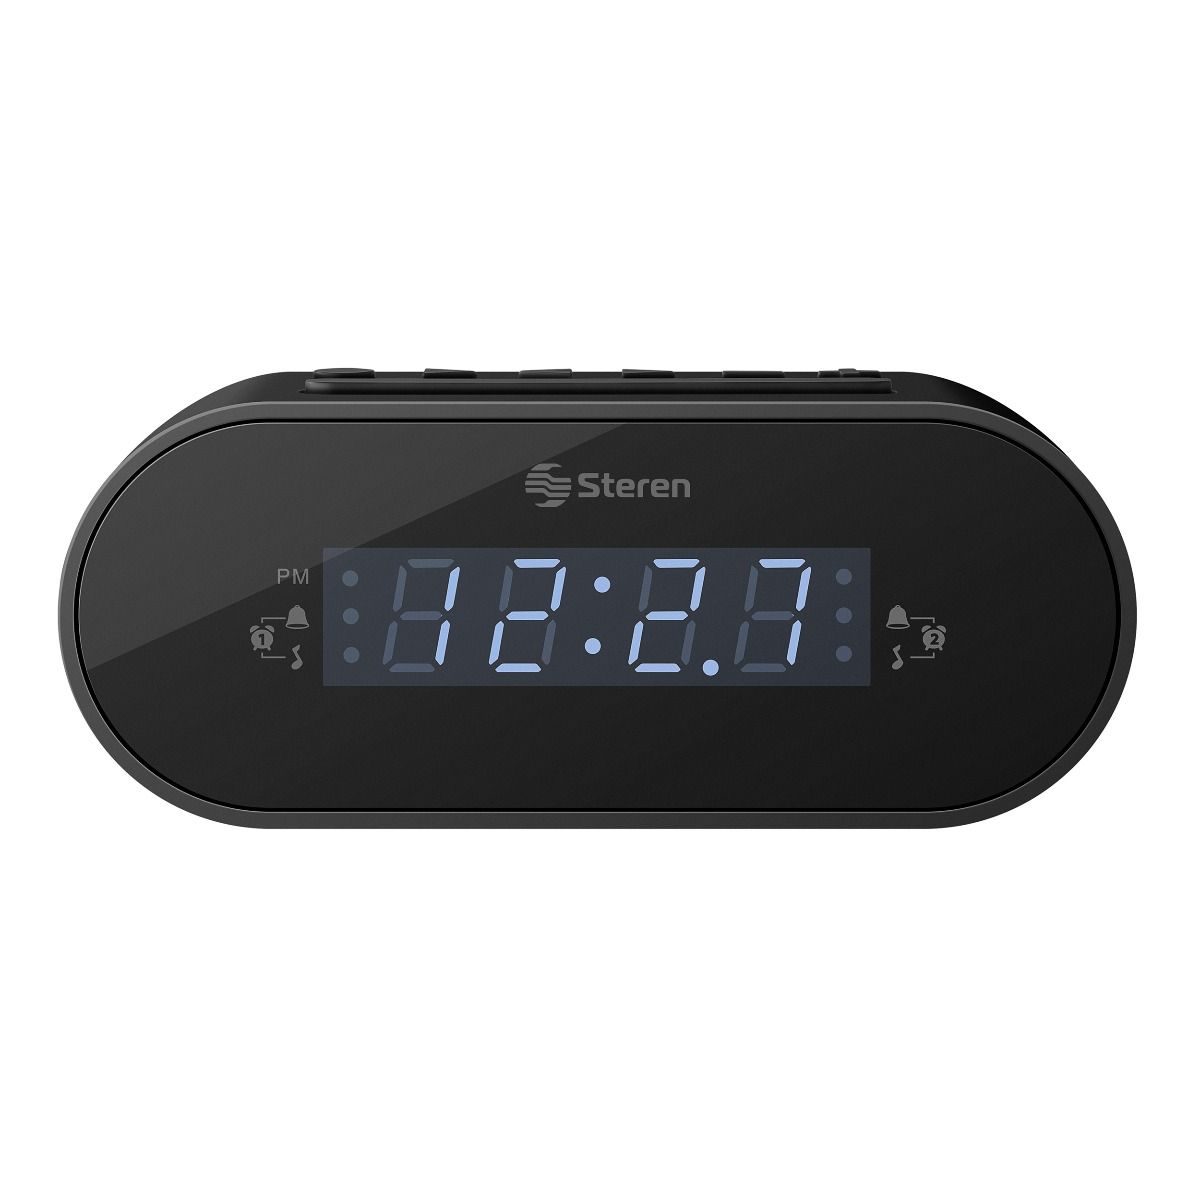 Radio despertador digital colorida, radio reloj pequeño, con superficie de  espejo, alarma doble, repetición, radio FM, temporizador de sueño, puerto